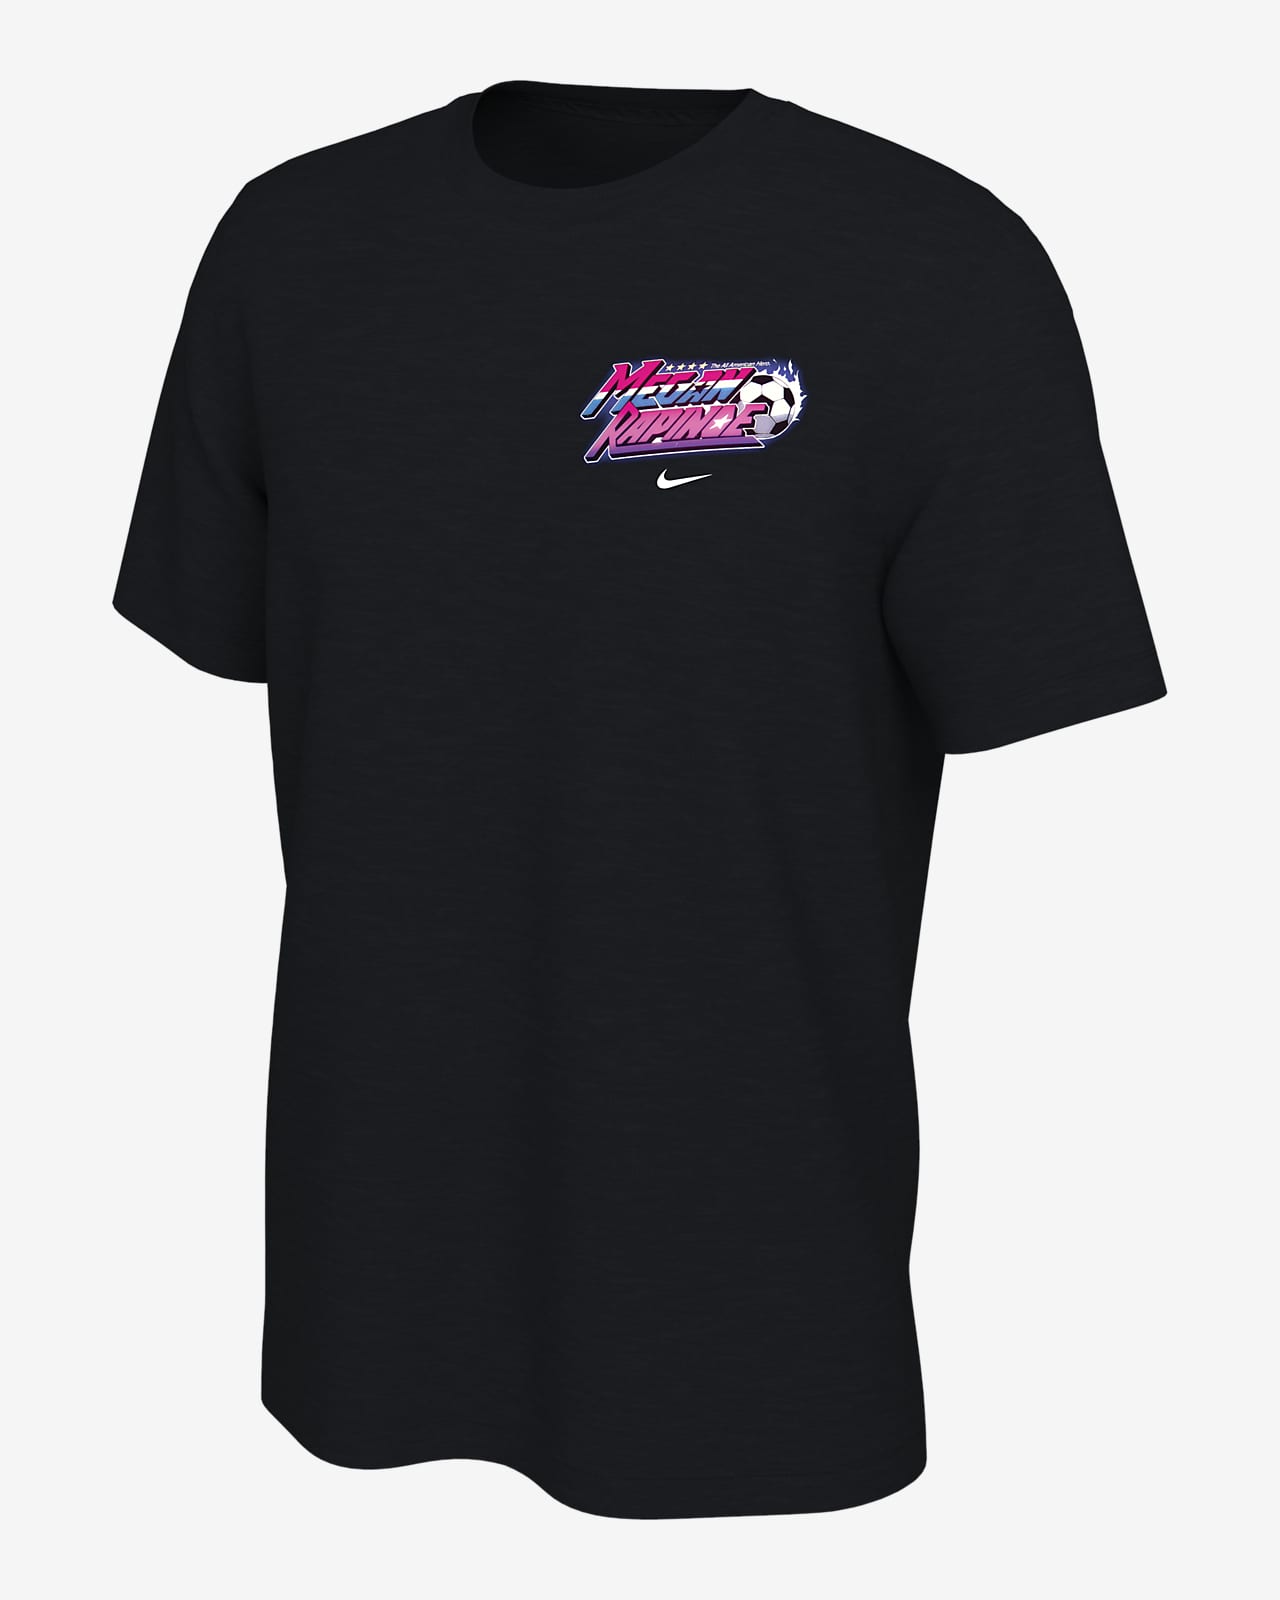 Megan Rapinoe Nike Soccer T-Shirt